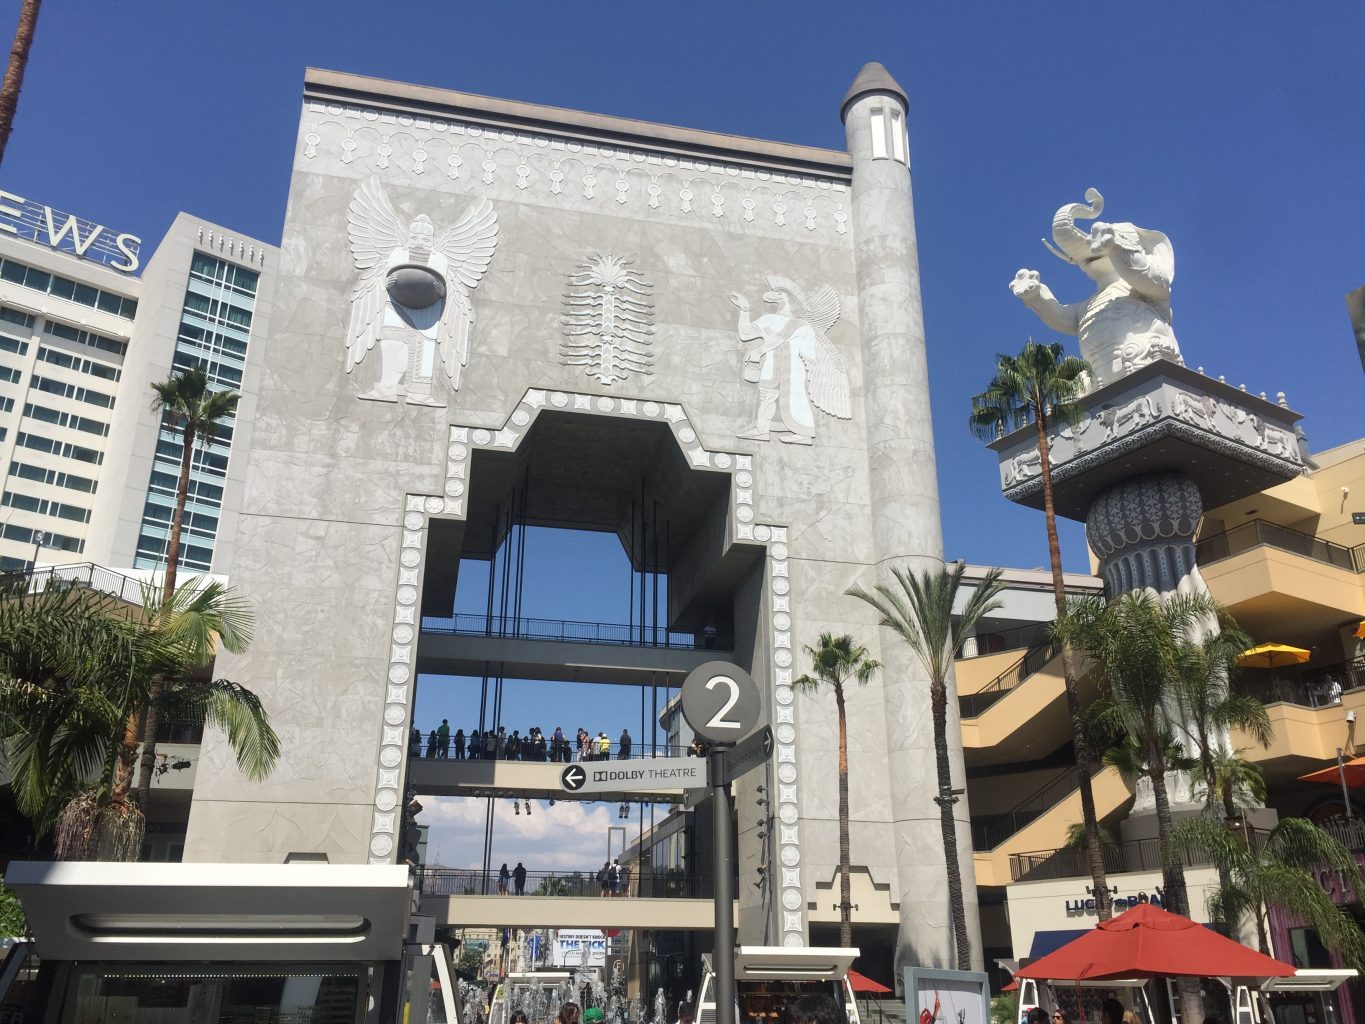 Centro comercial Hollywood&Highland. Paseo de la fama